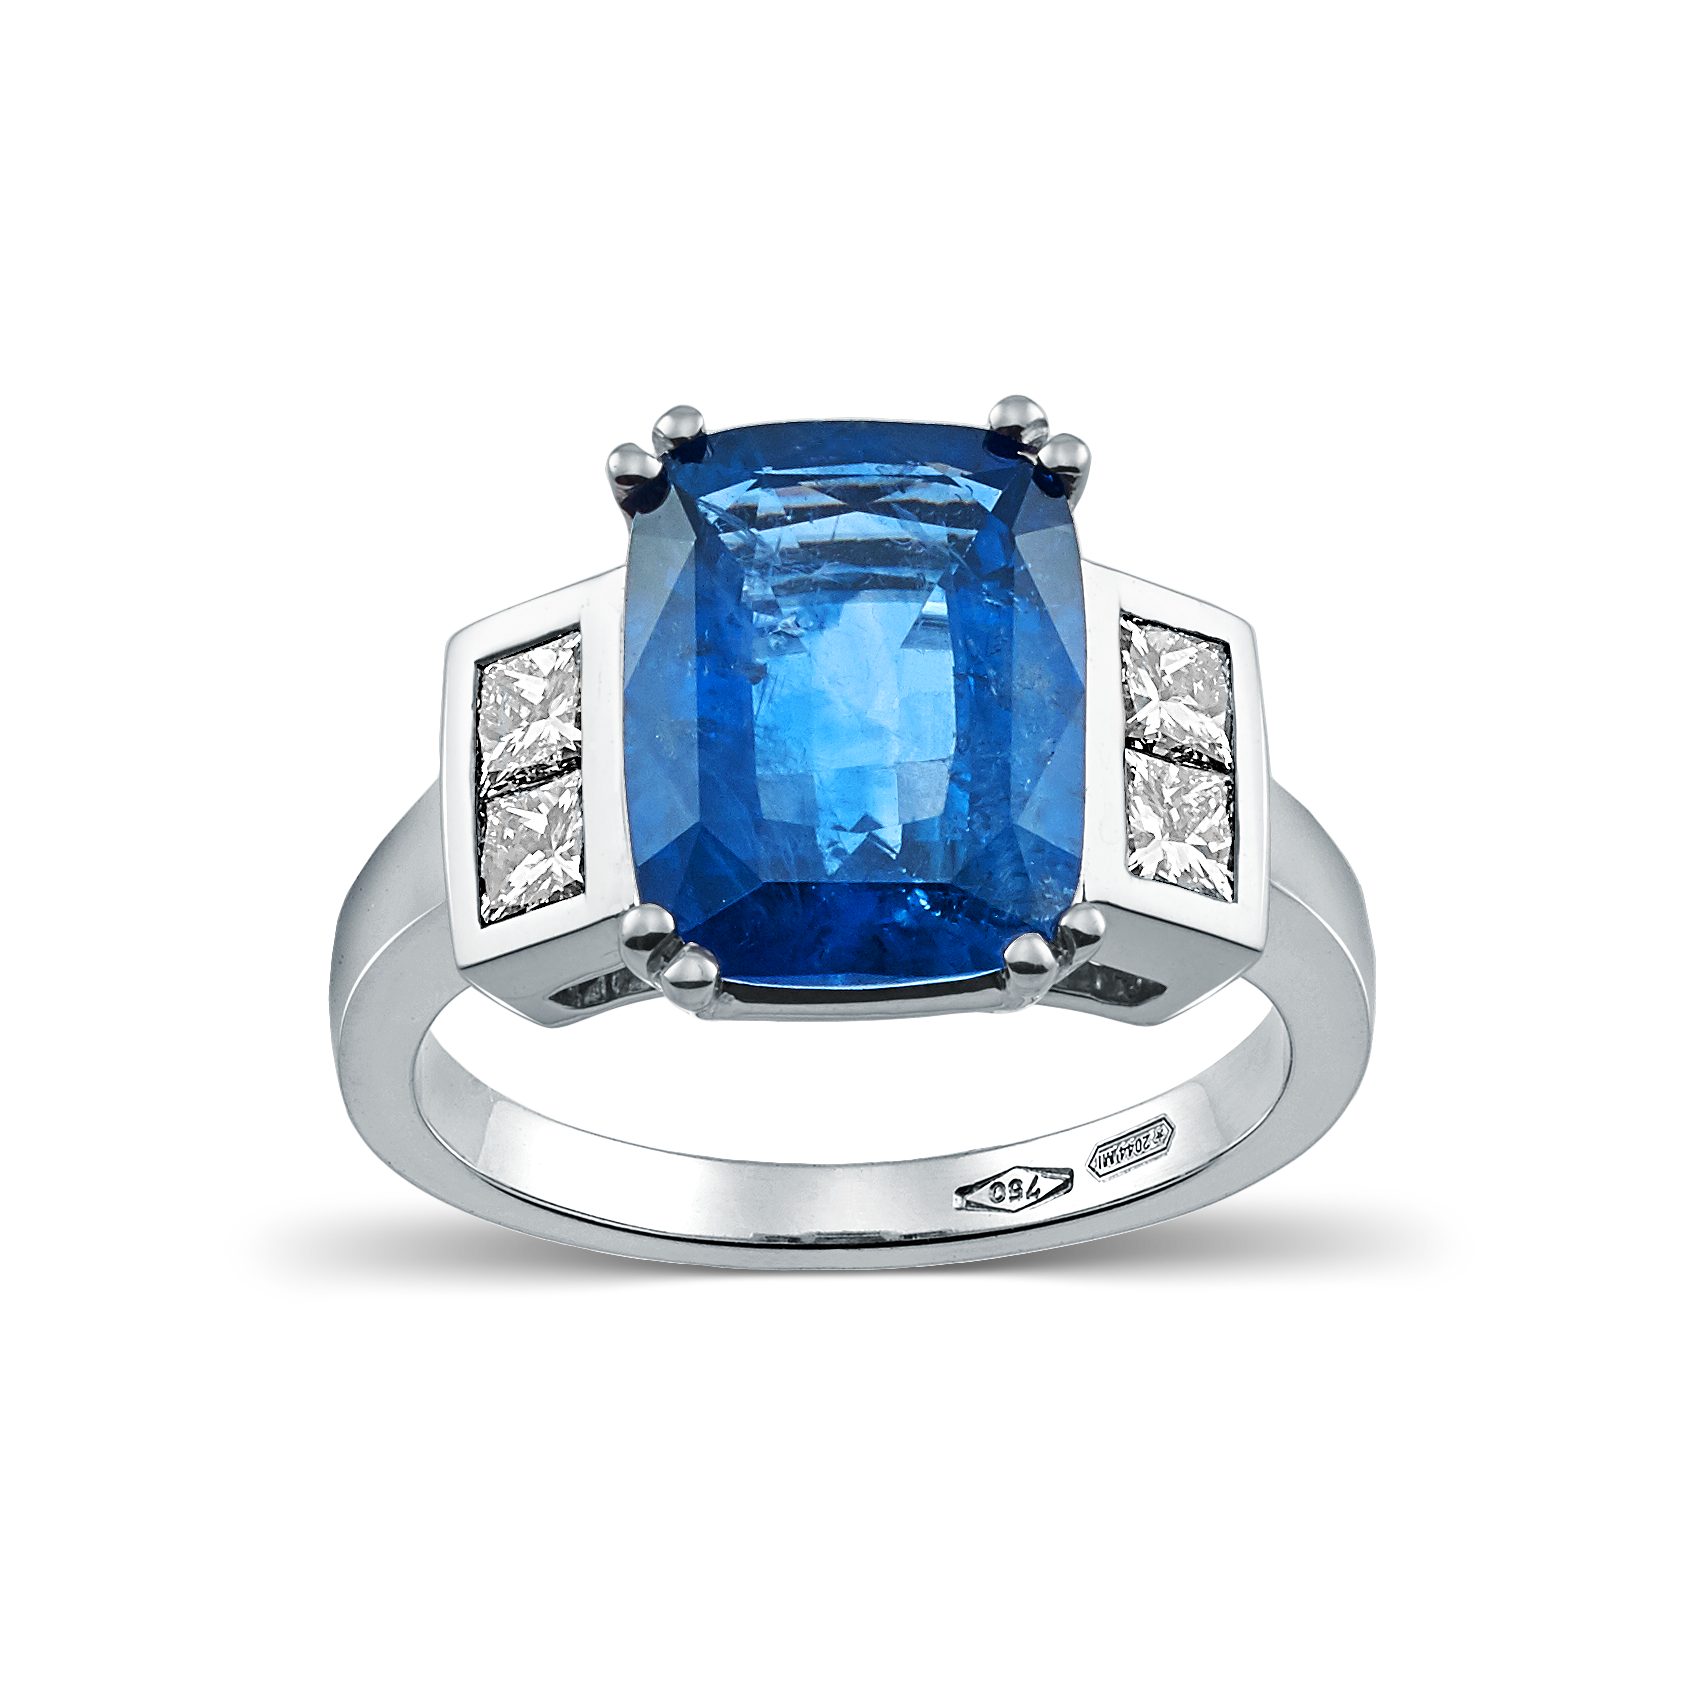 Devous Blue Sapphire Ring with Diamonds - Devous Jewels Santorini